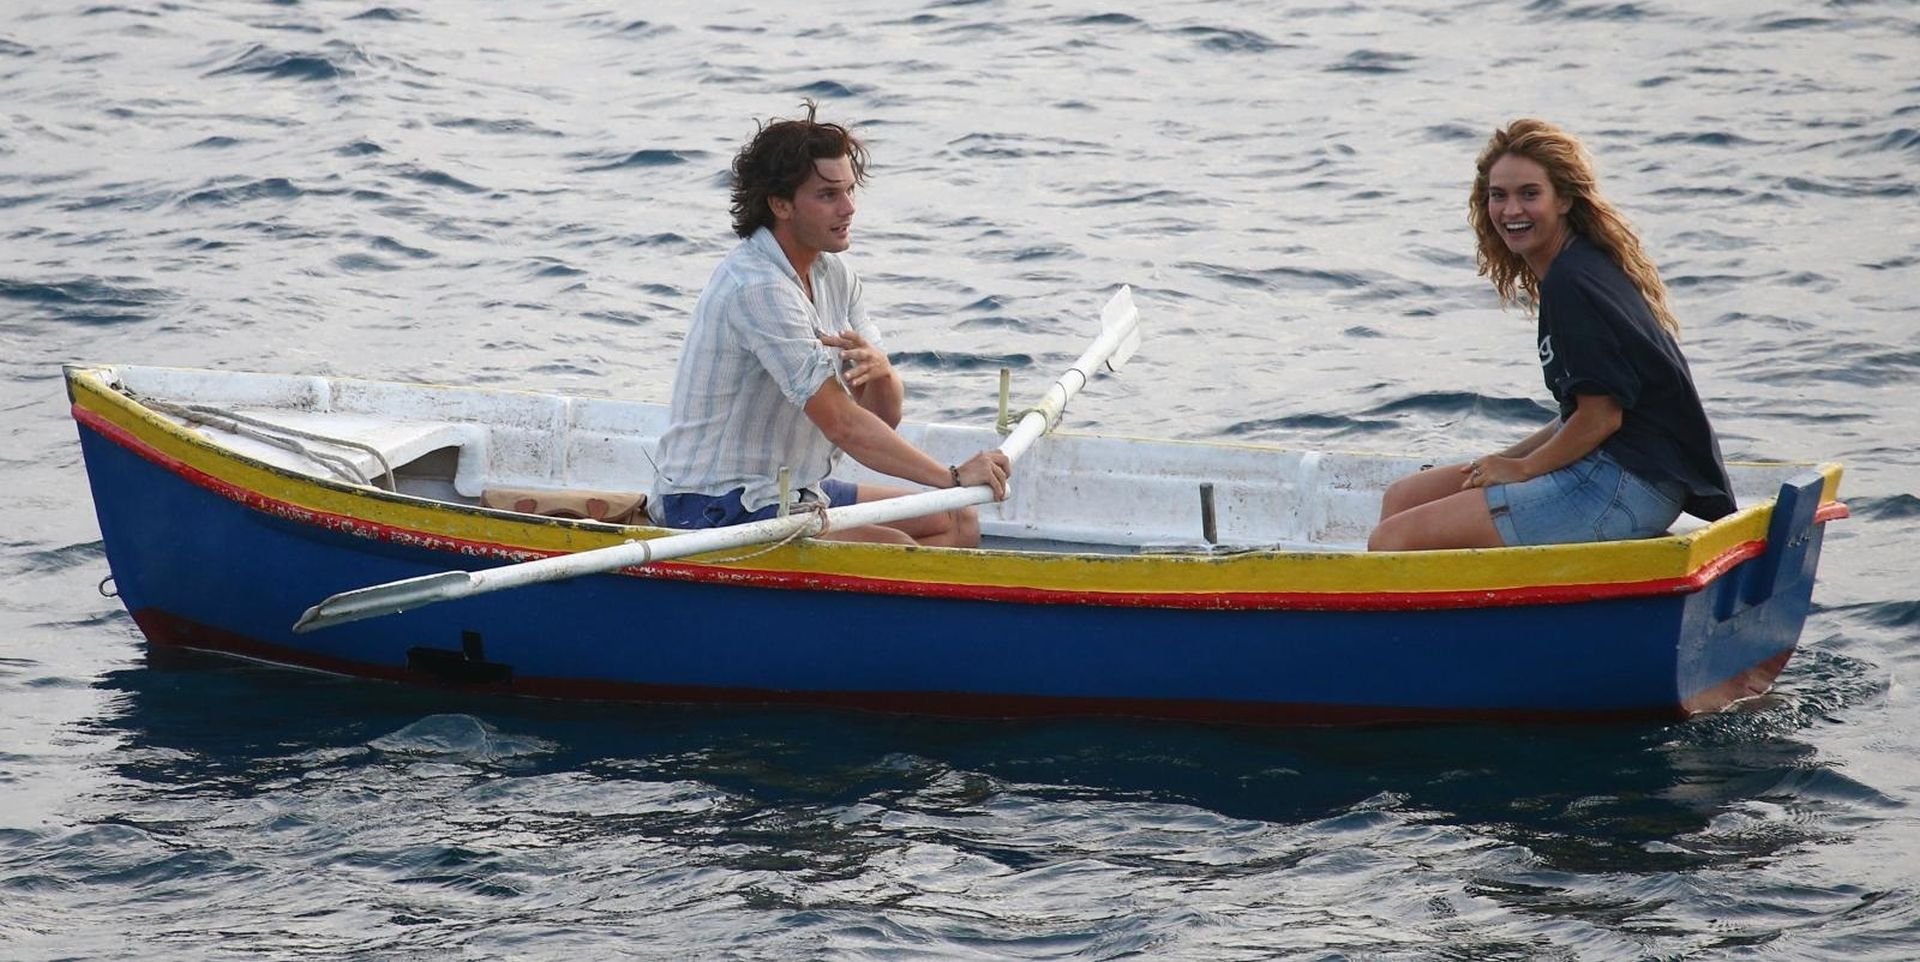 12.09.2017, otok Vis - Zapocelo je snimanje hollywoodskog filma Mamma Mia 2. Snimanje scene na moru. Photo: Zeljko Lukunic/PIXSELL